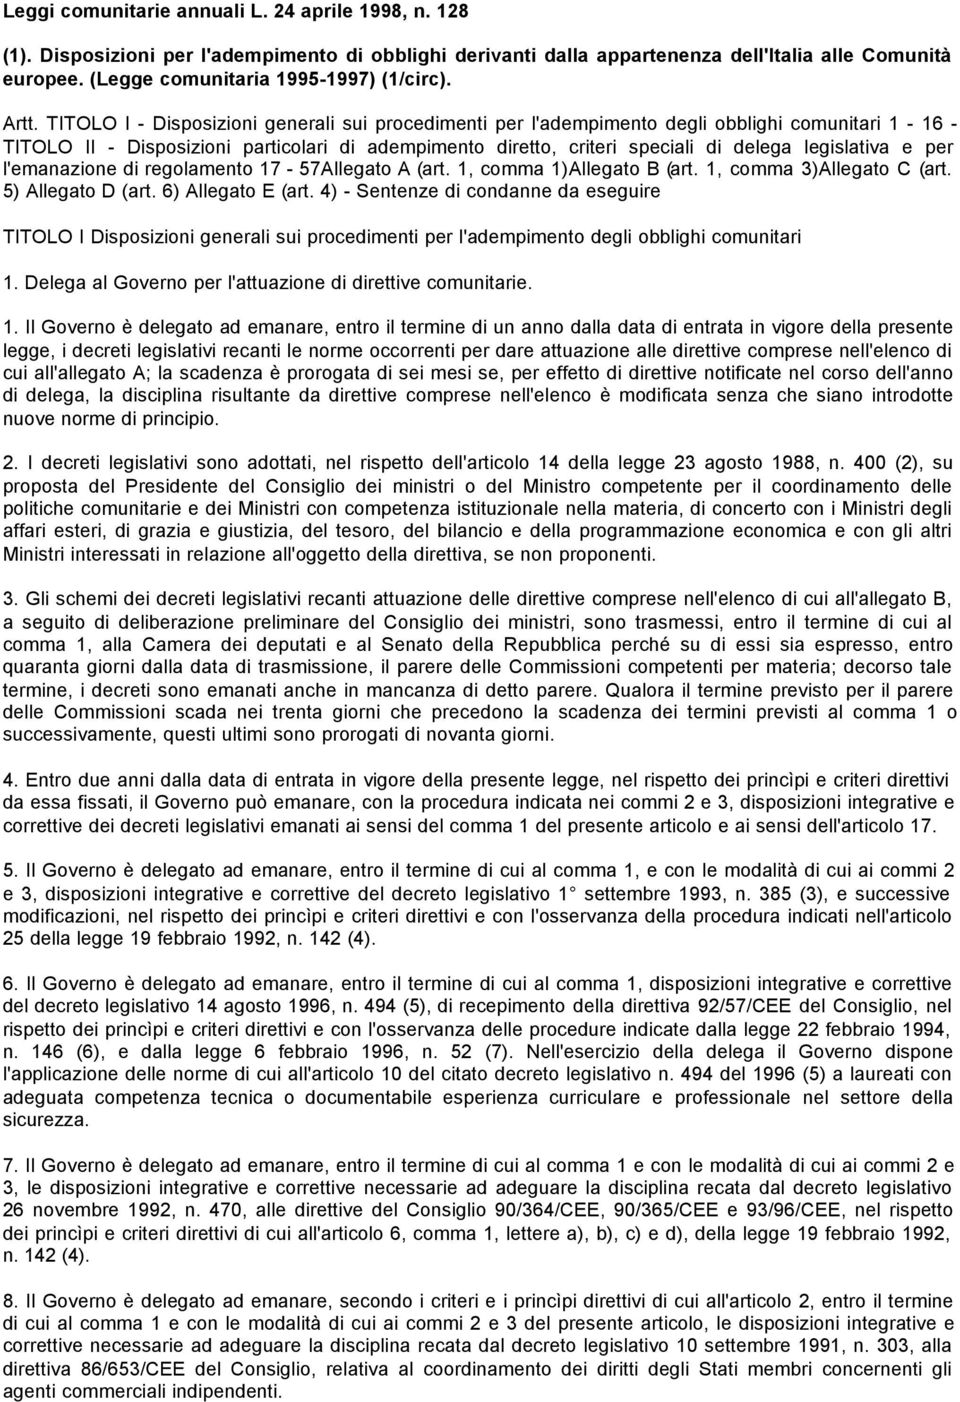 TITOLO I - Disposizioni generali sui procedimenti per l'adempimento degli obblighi comunitari 1-16 - TITOLO II - Disposizioni particolari di adempimento diretto, criteri speciali di delega